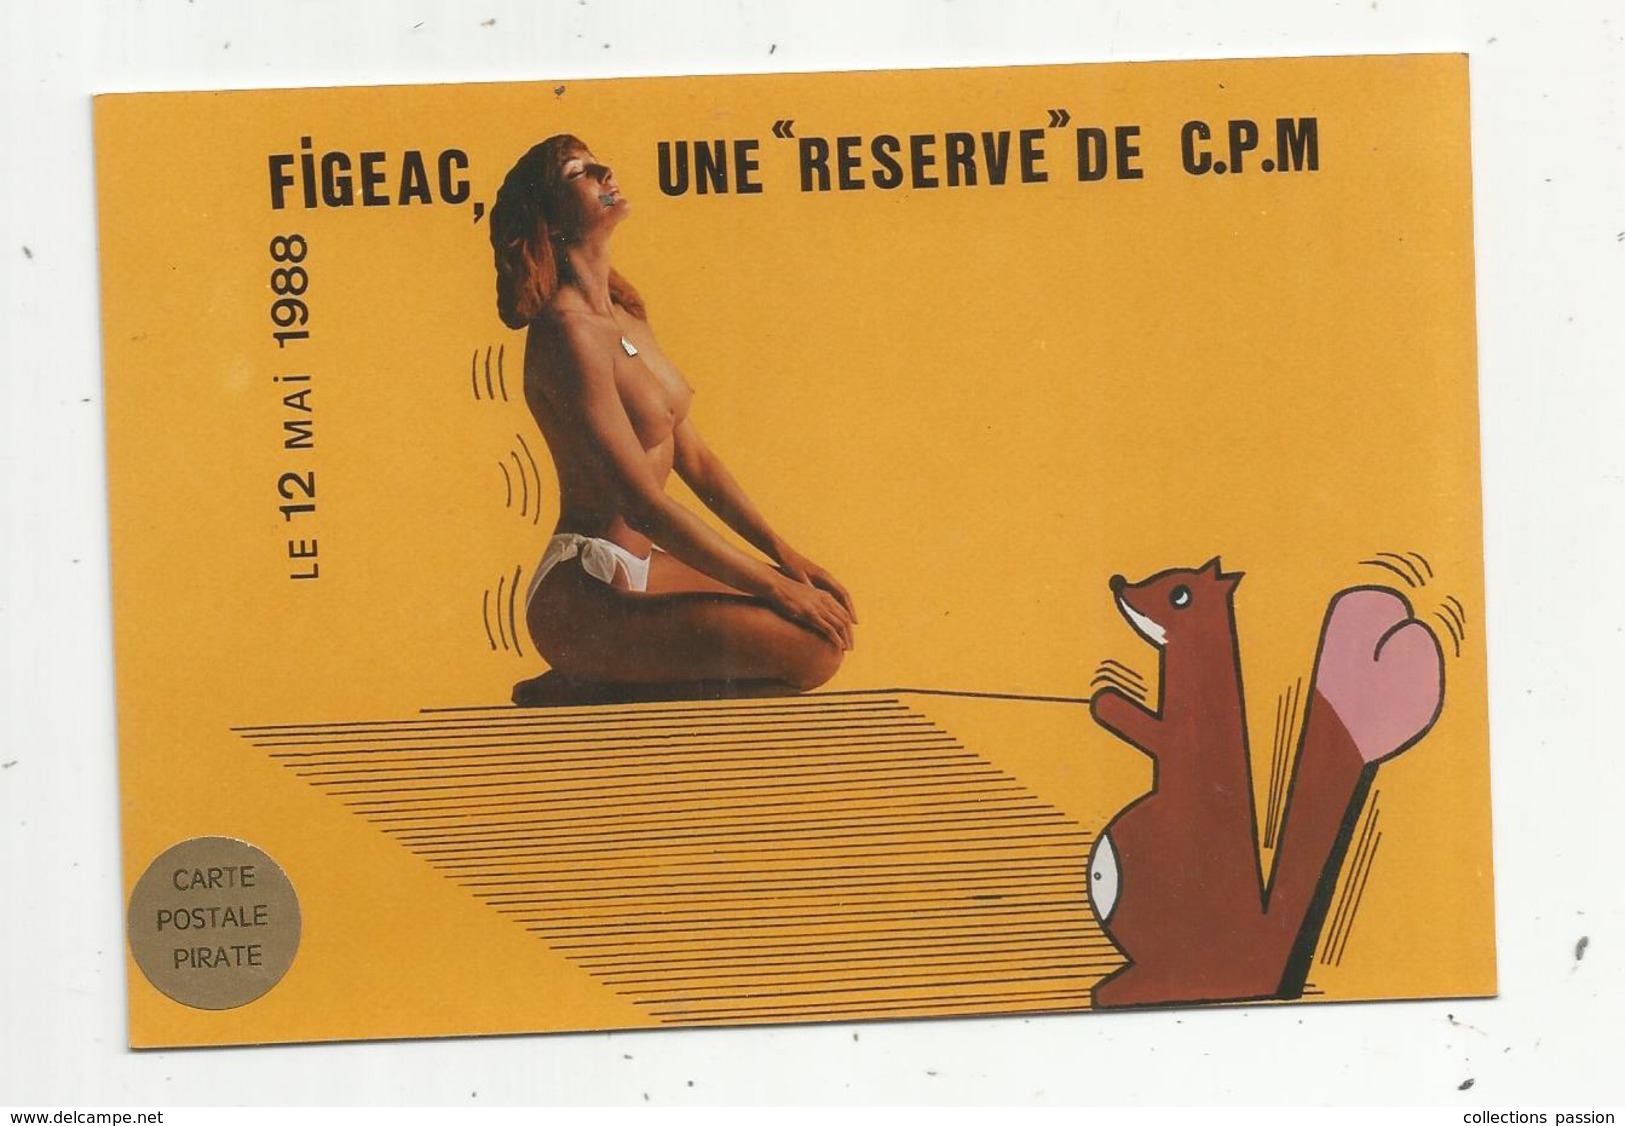 Cp, Bourses & Salons De Collections, FIGEAC,1988, Une Réserve De CPM ,carte Pirate , N° 24 / 50 Ex.,illustrateur Charles - Beursen Voor Verzamellars